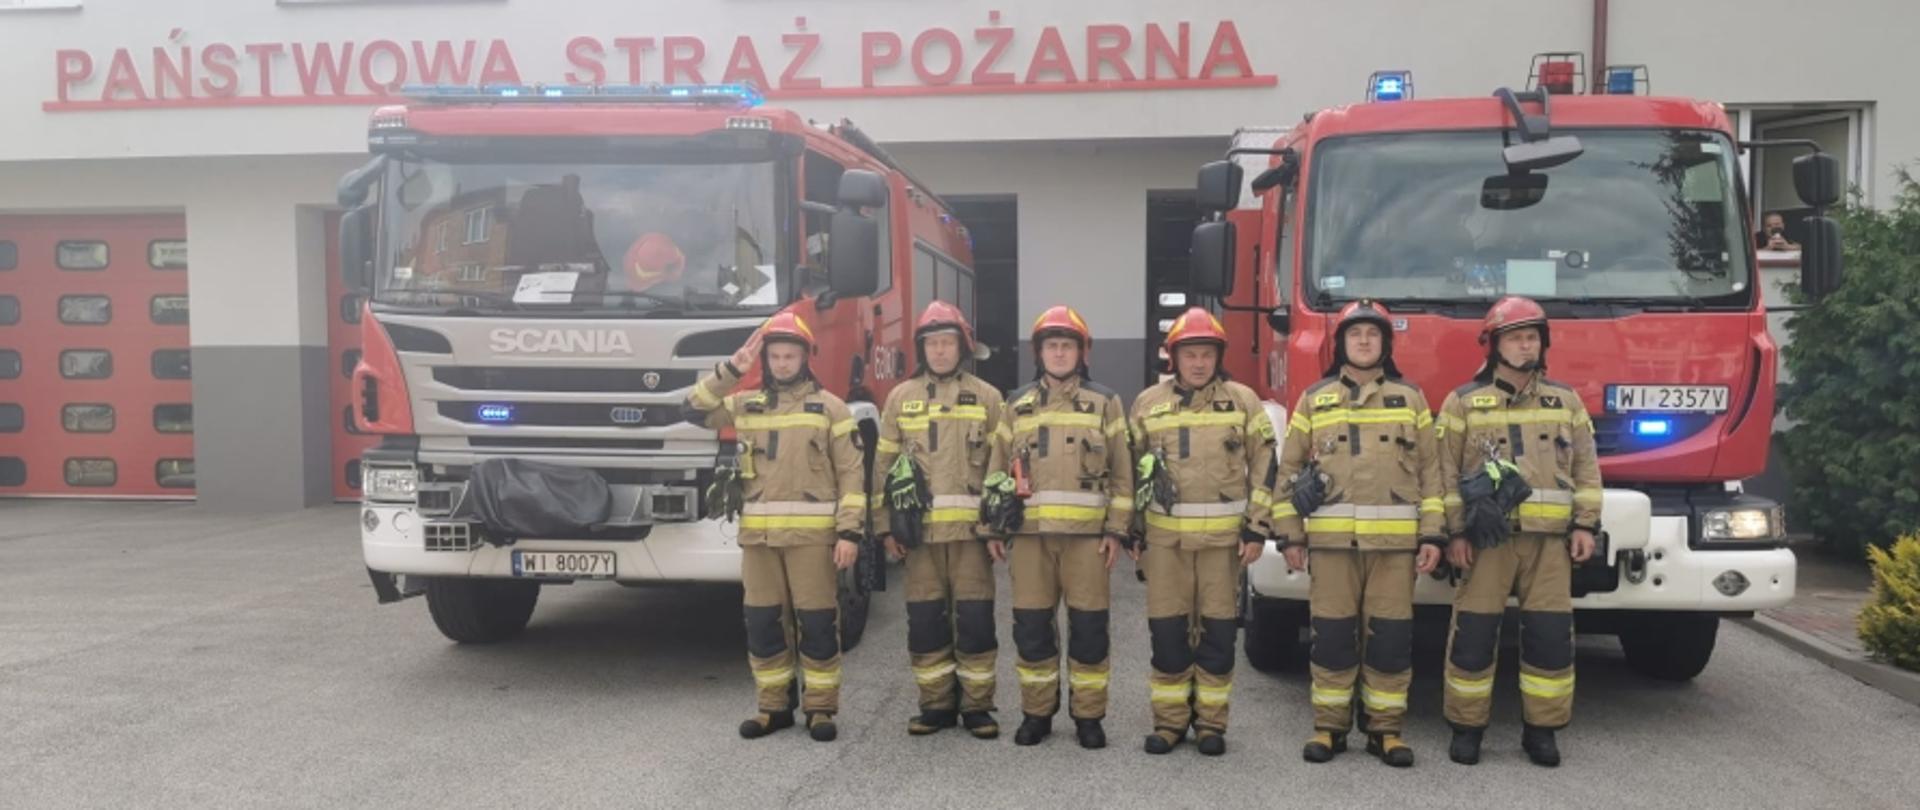 Na zdjęciu widocznych jest sześciu strażaków w piaskowych ubraniach specjalnych i czerwonych hełmach. Funkcjonariusze stoją w szeregu przed samochodami ratowniczo-gaśniczymi, przed bramami sochaczewskiej jednostki.